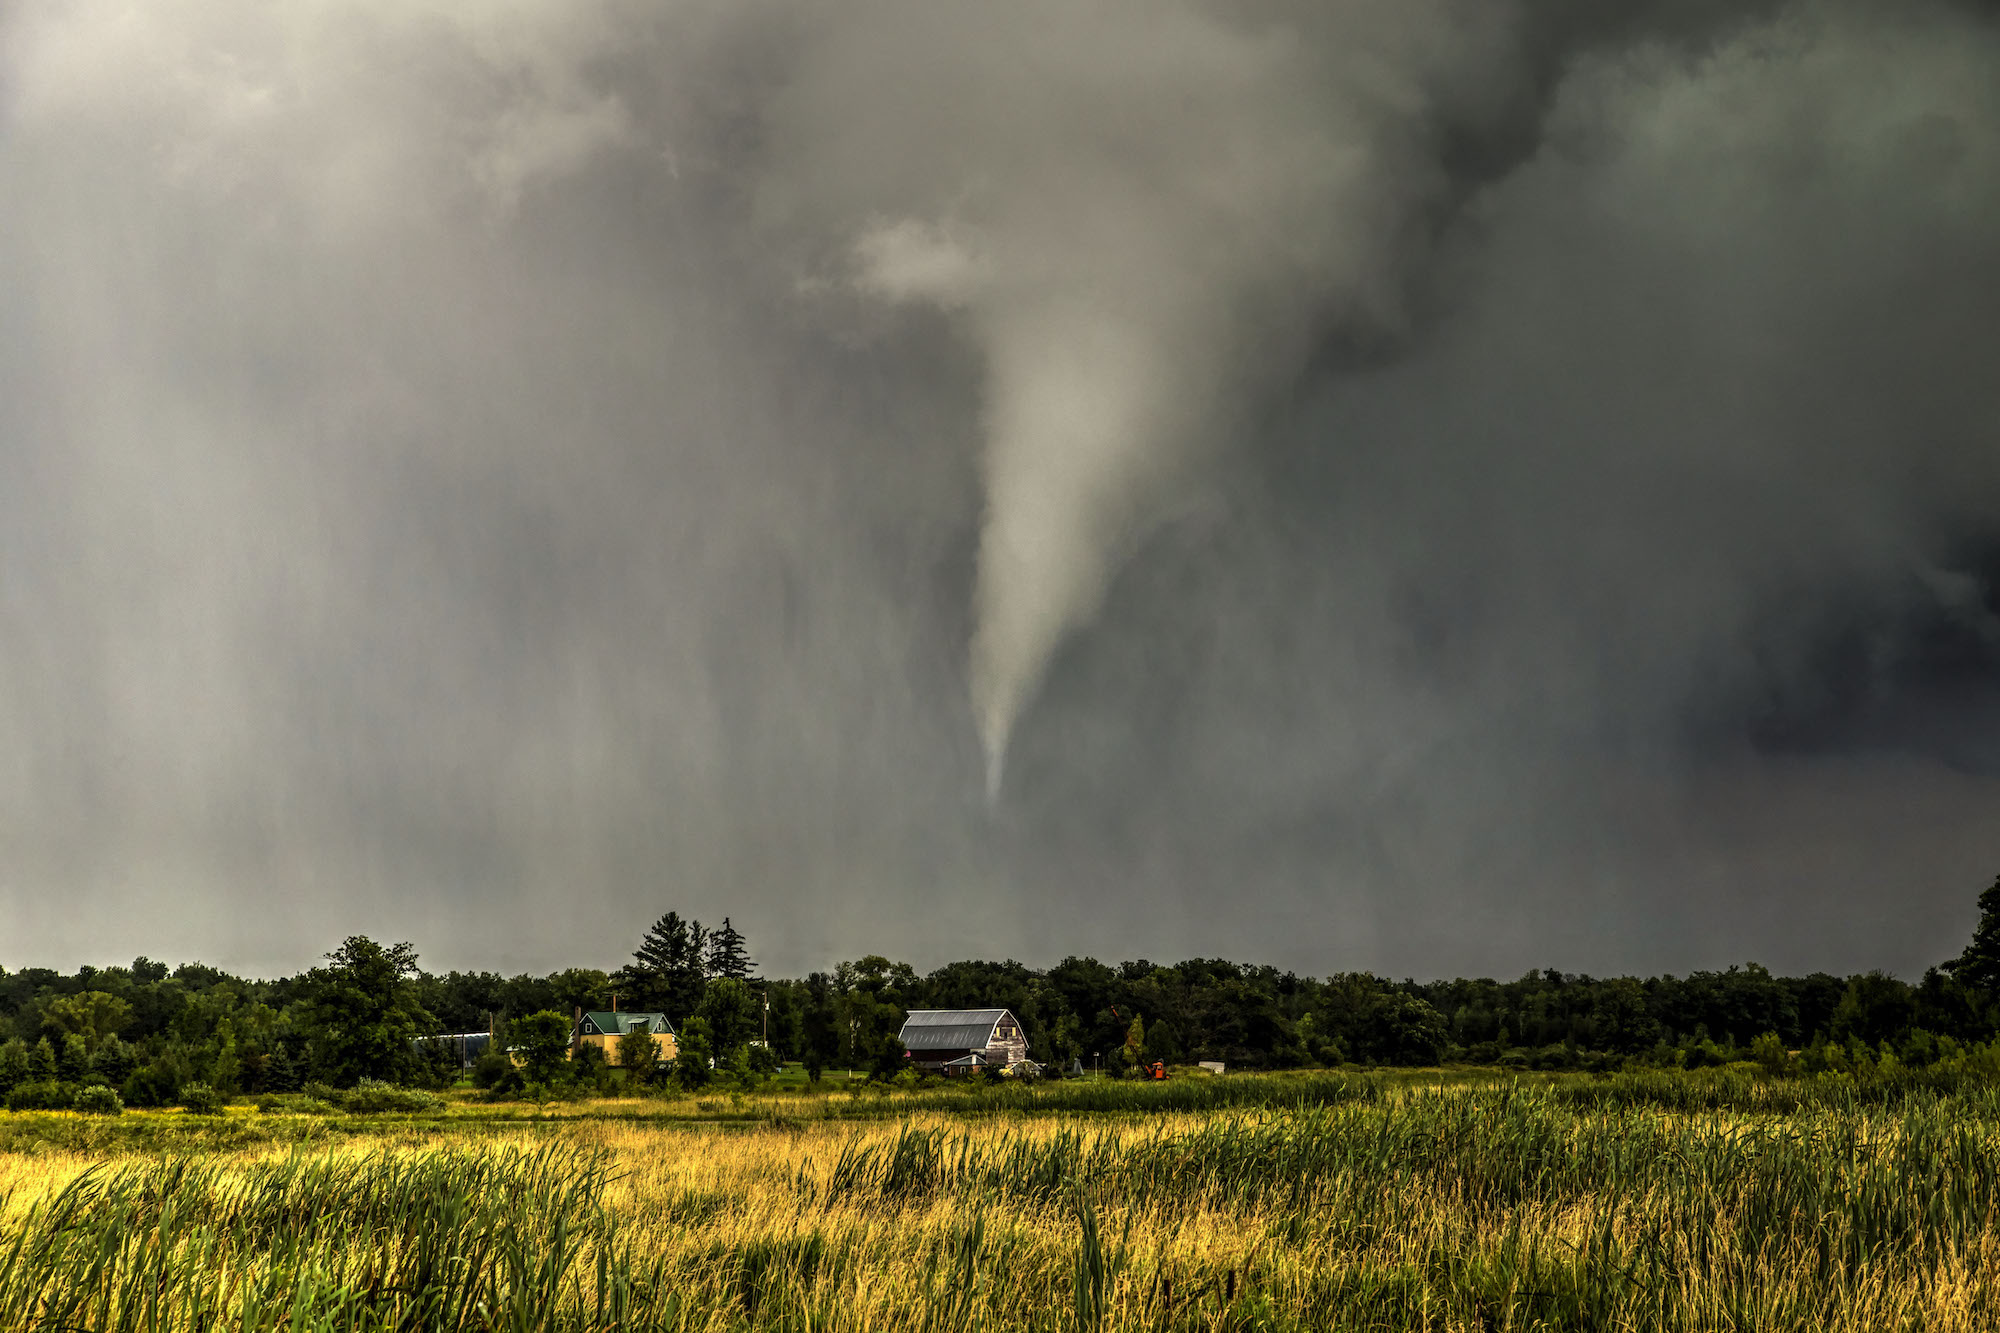 A tornado wreaking havoc in a large field